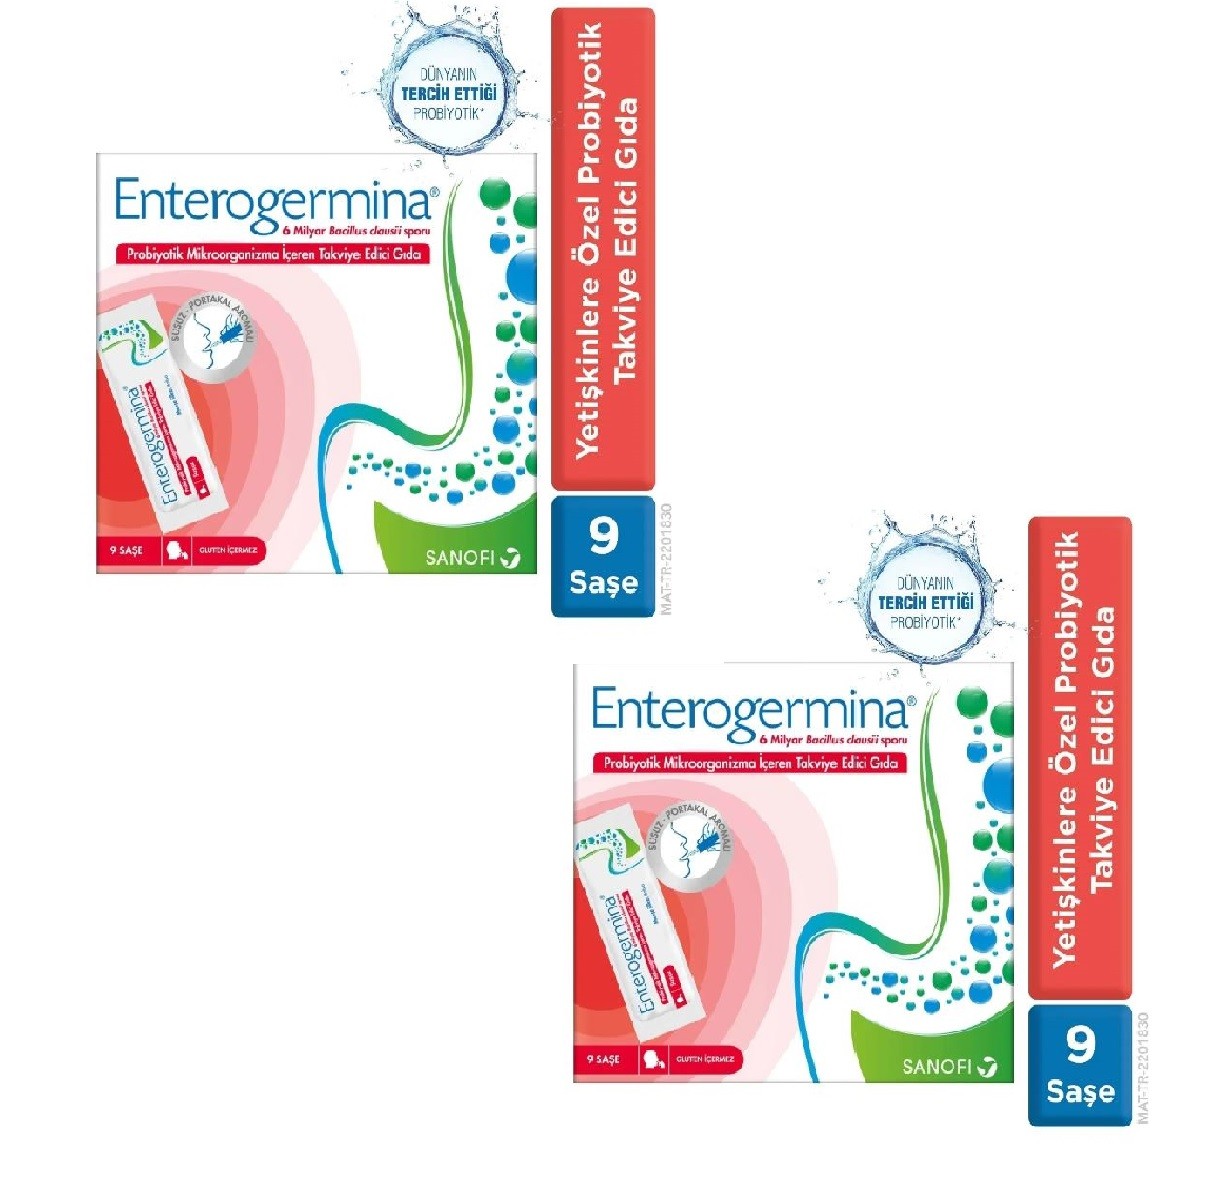 Enterogermina Probiyotik  İçeren Takviye Edici Gıda (6 Milyar) 9 Şase 2 kutu